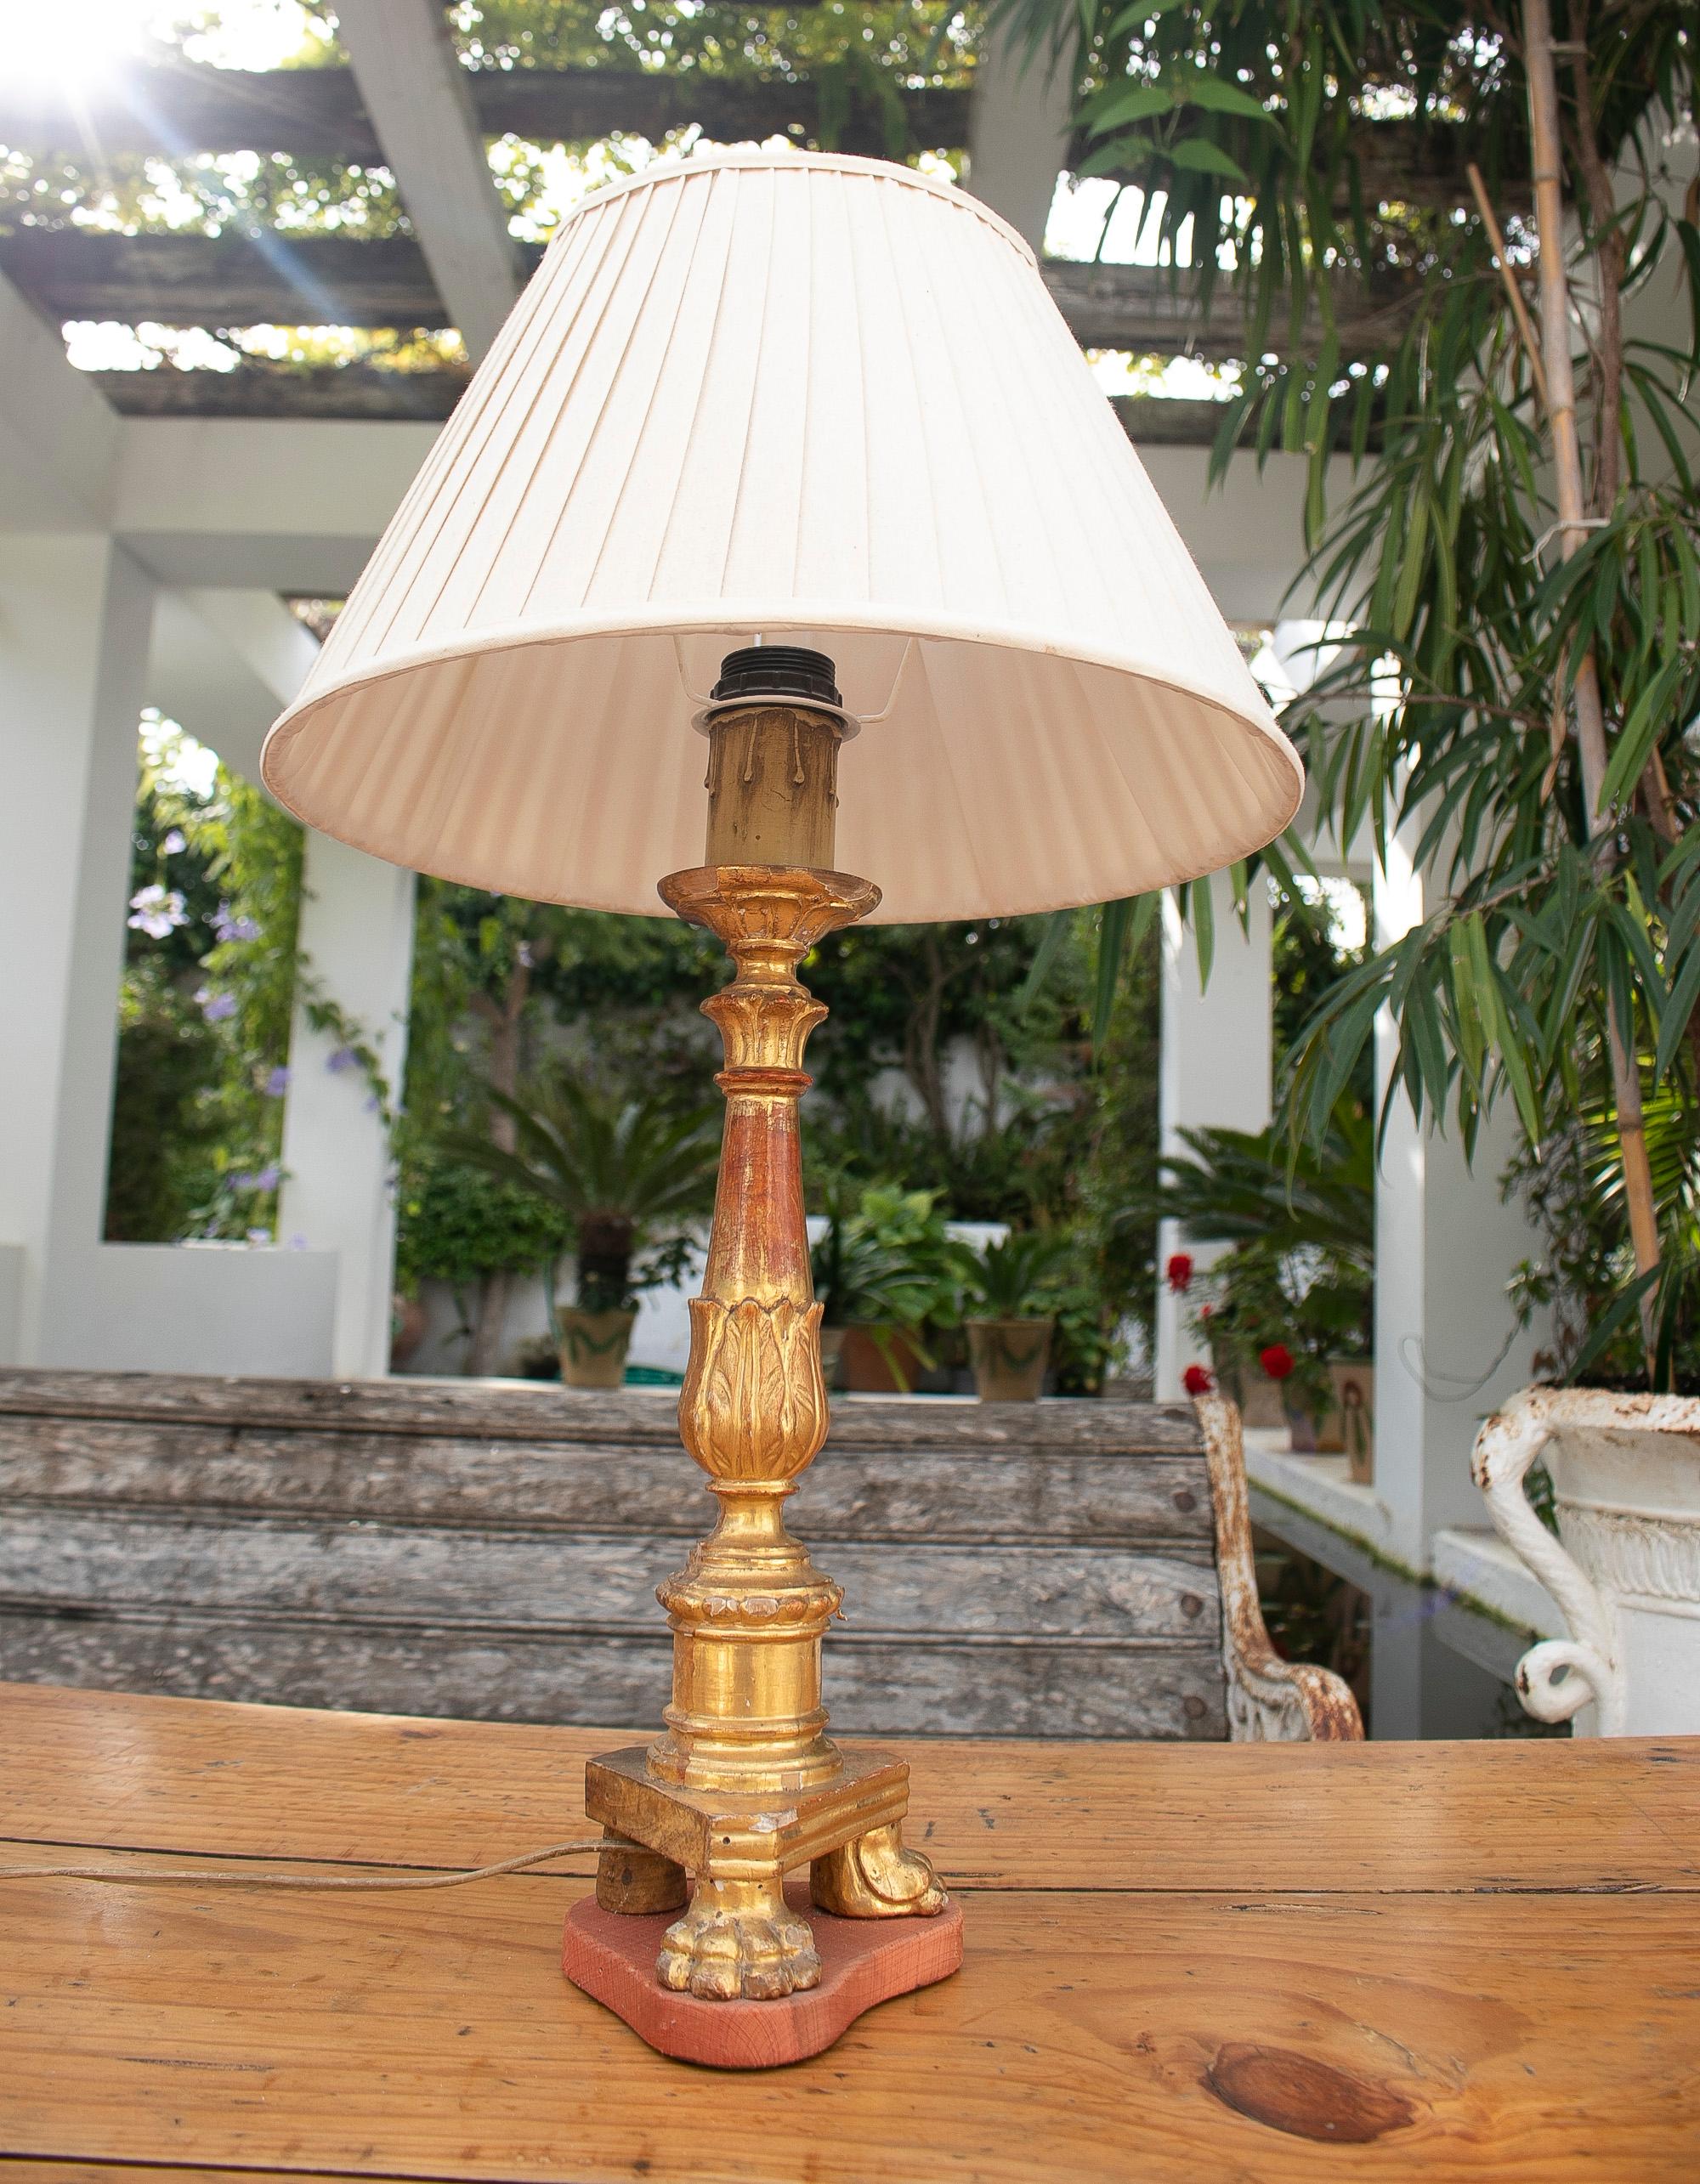 spanische Tischlampe aus dem 18. Jahrhundert mit vergoldetem Kerzenhalter und Klauenfüßen

Der Lampenschirm ist nicht im Preis enthalten.